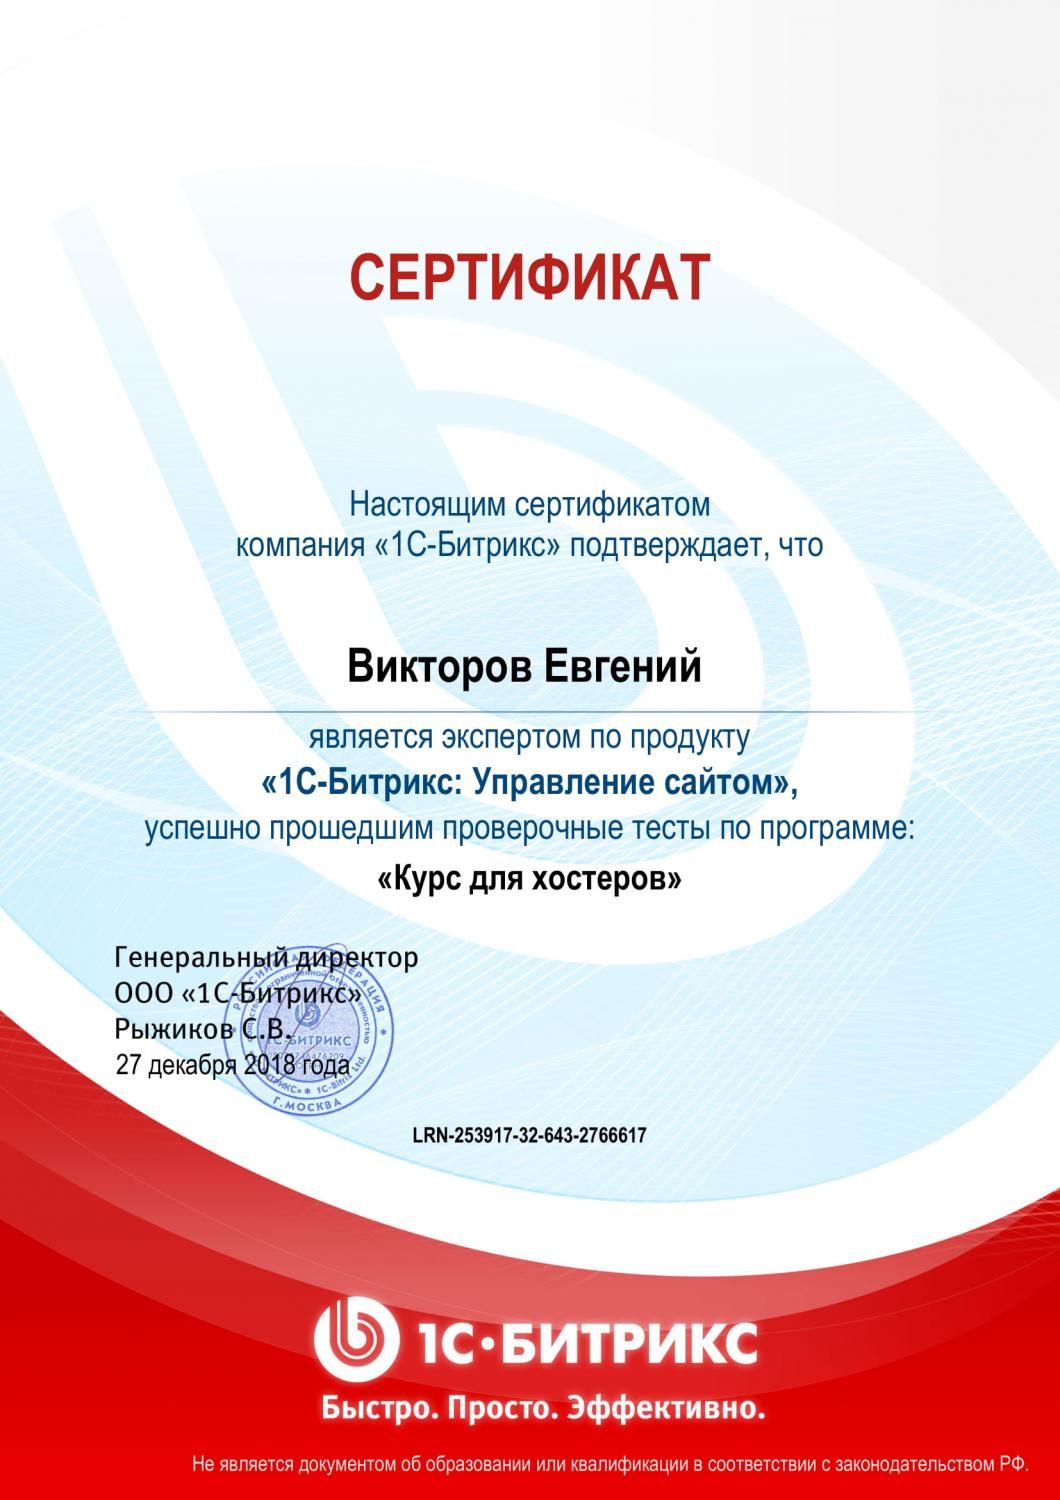 Сертификат «1С-Битрикс: Управление сайтом»